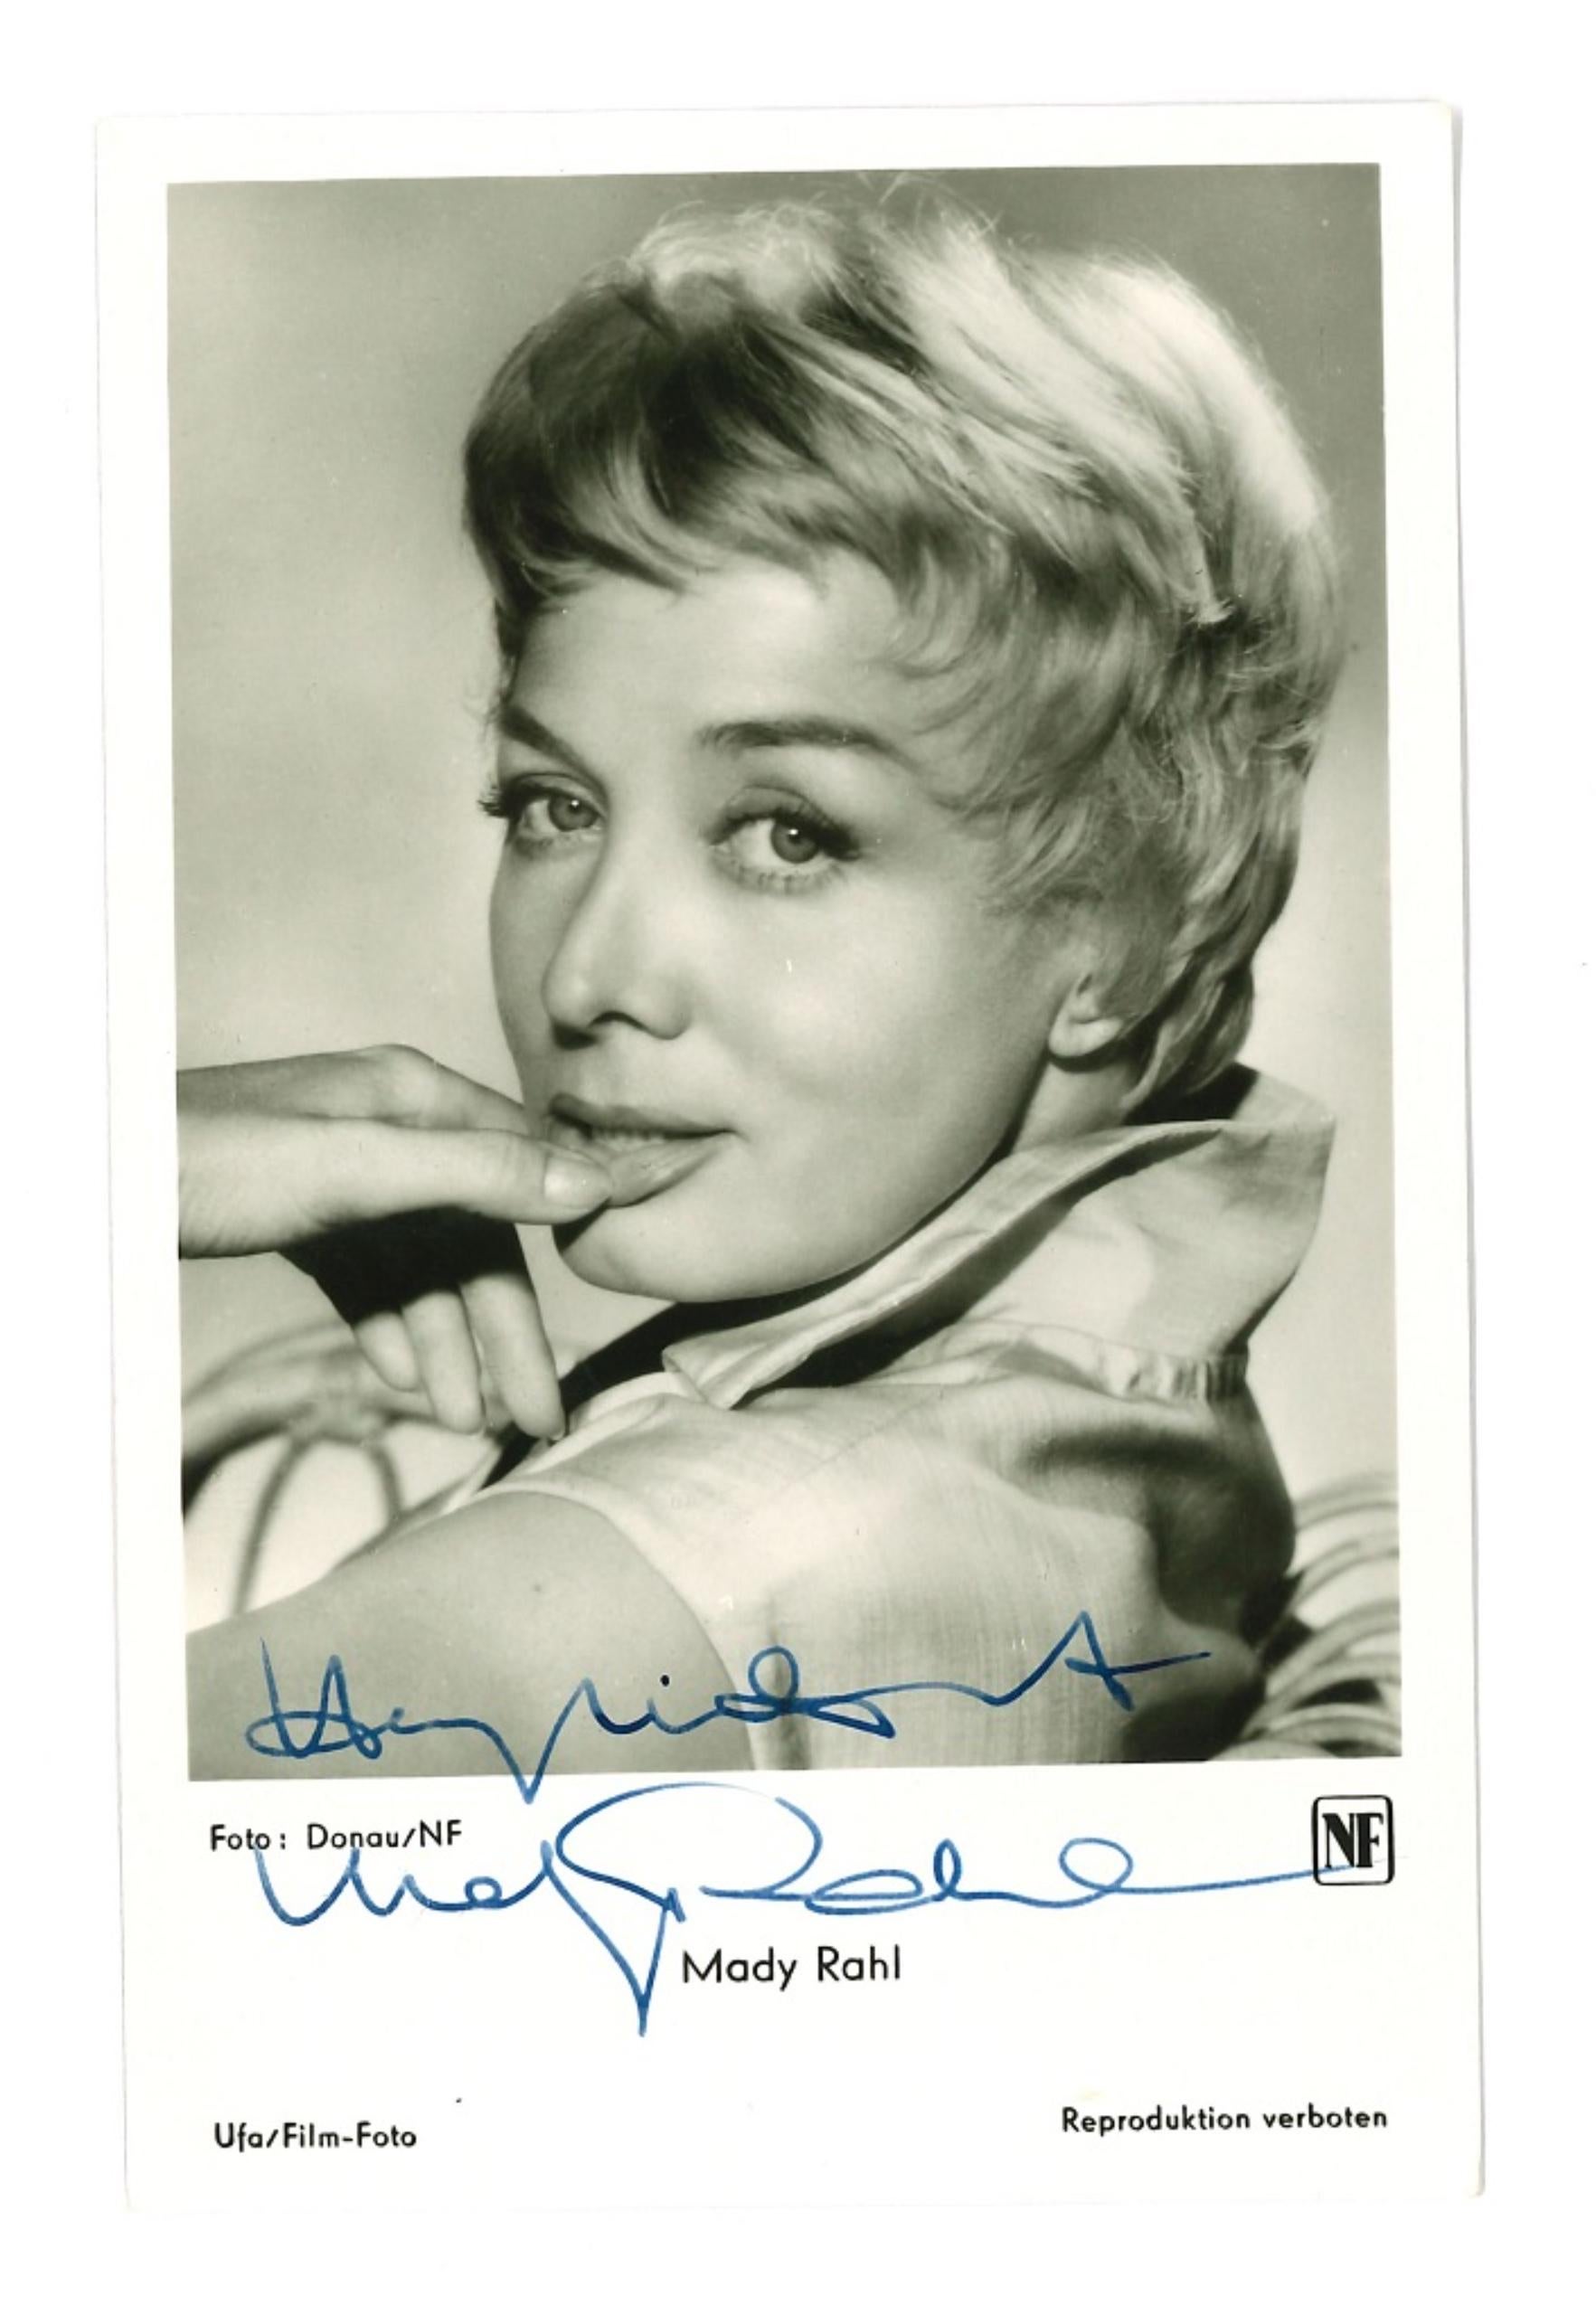 Unknown Portrait Photograph - Autographed Portrait of Mady Rahl - Vintage b/w Postcard - 1950s